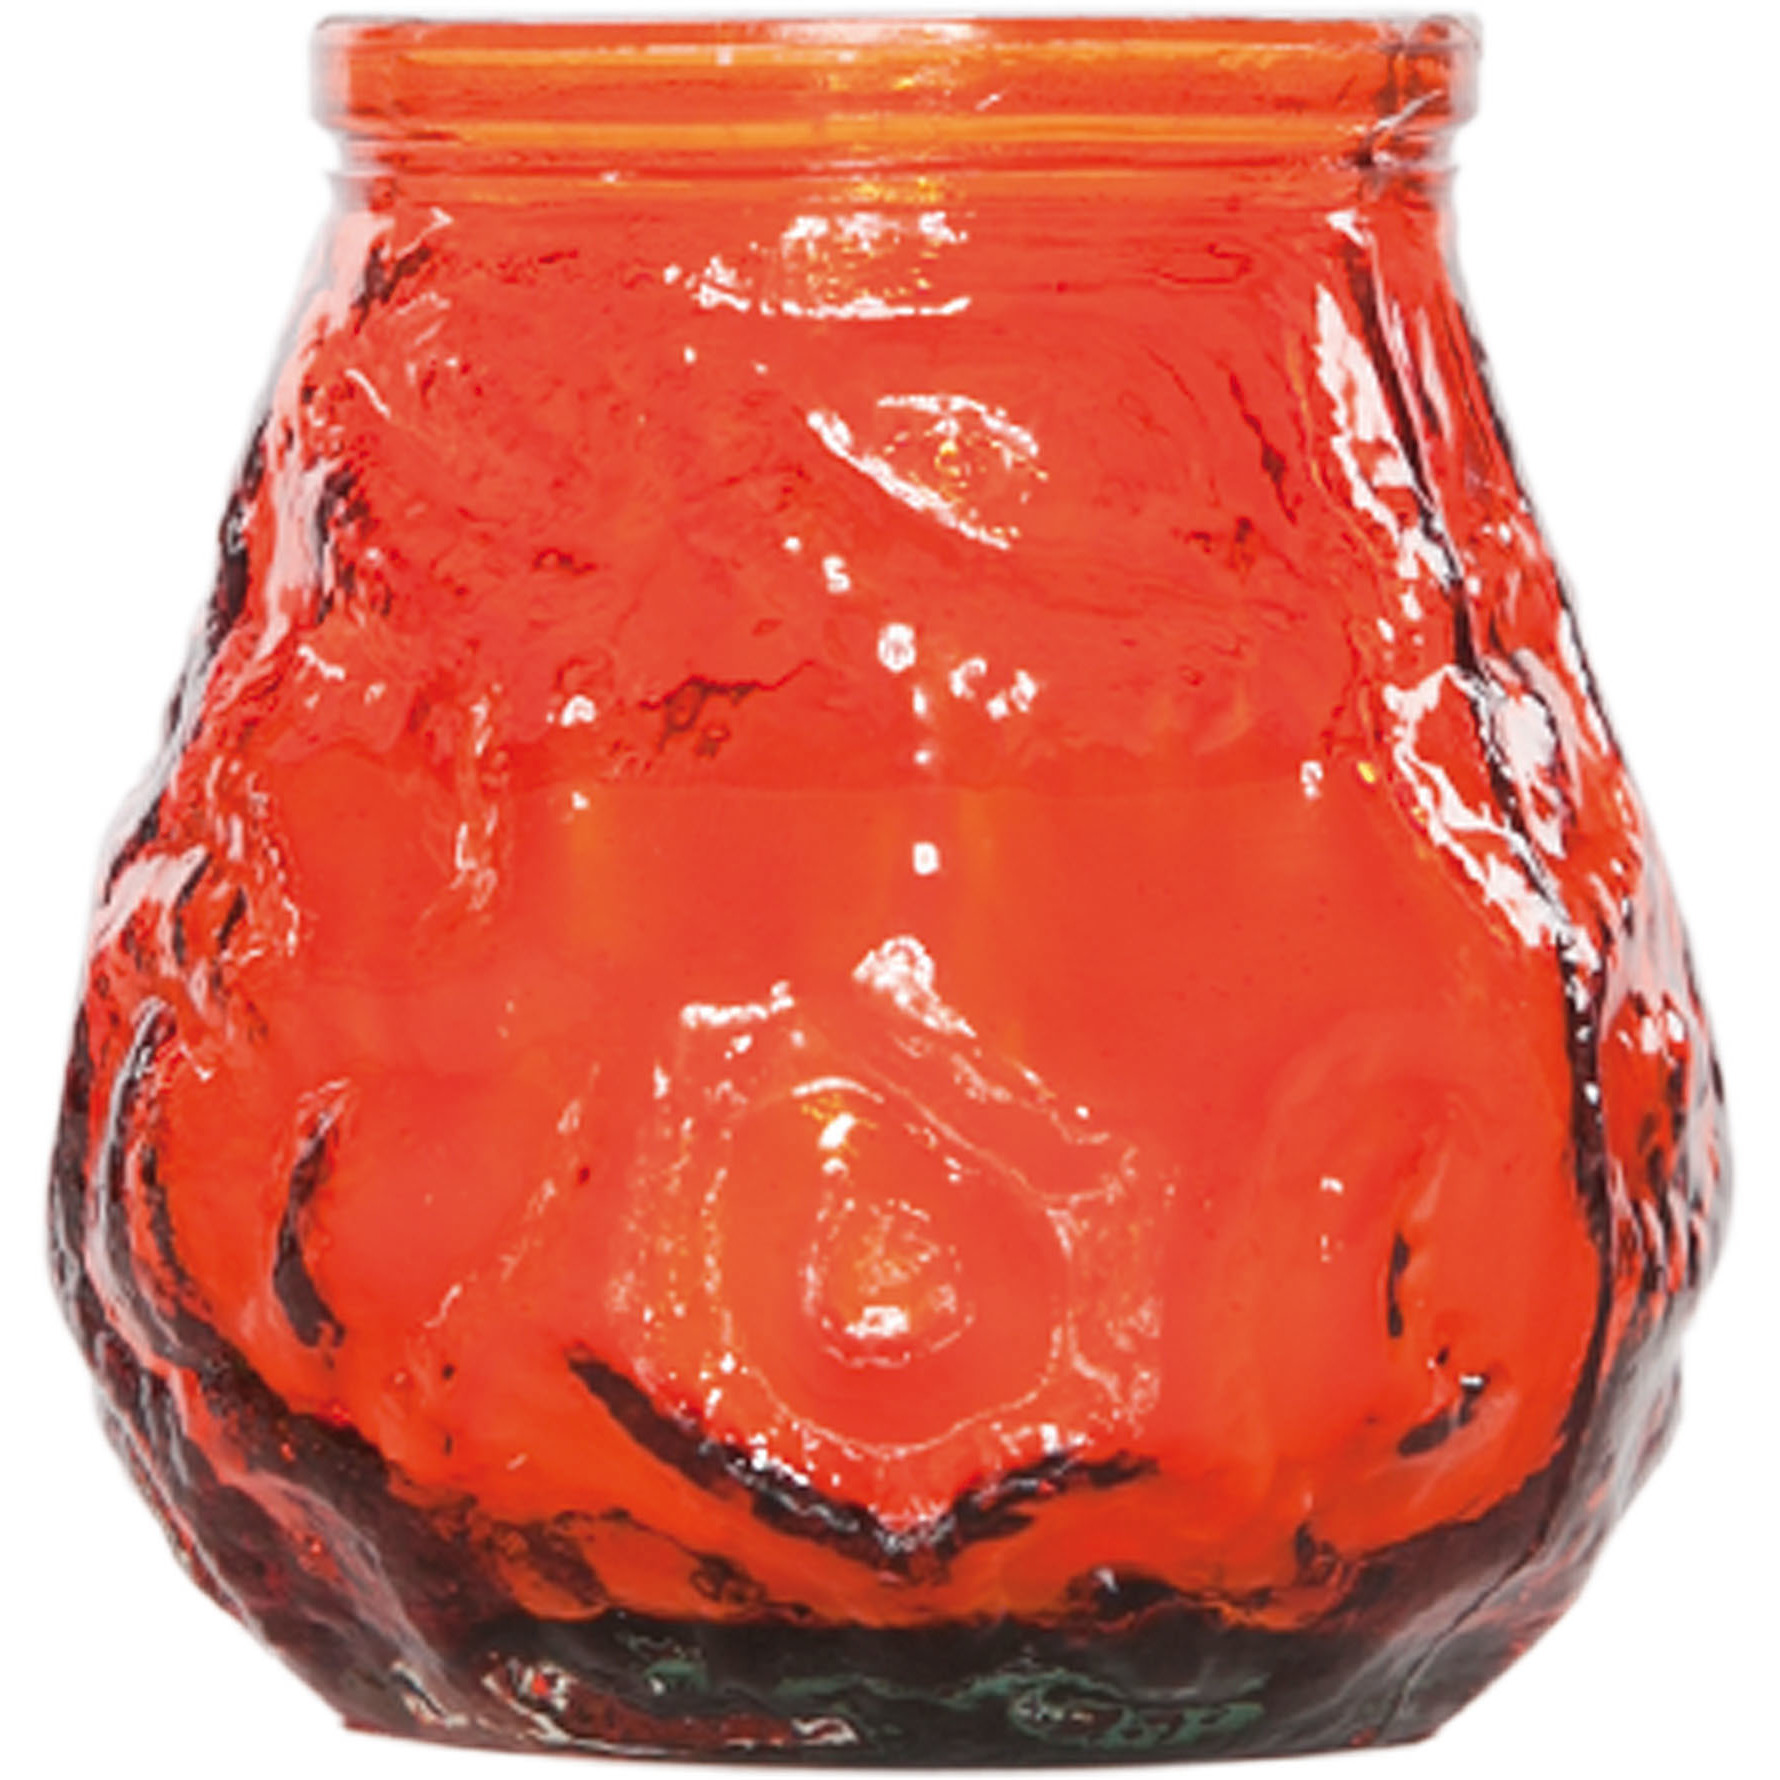 1x Horeca kaarsen oranje in kaarshouder van glas 7 cm brandtijd 17 uur